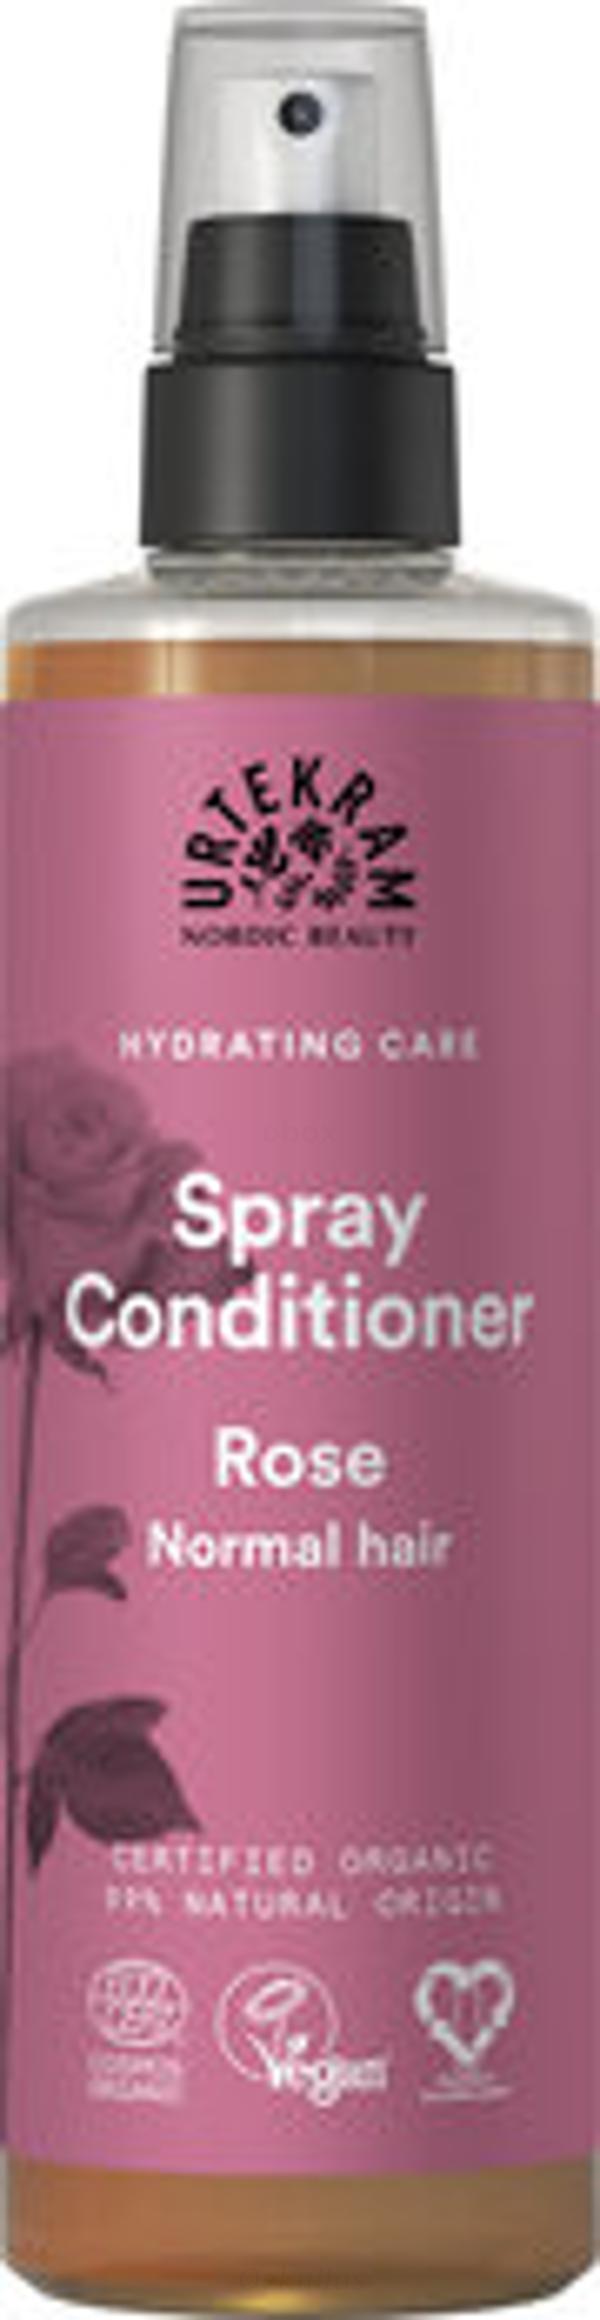 Produktfoto zu Spray Conditioner Rose